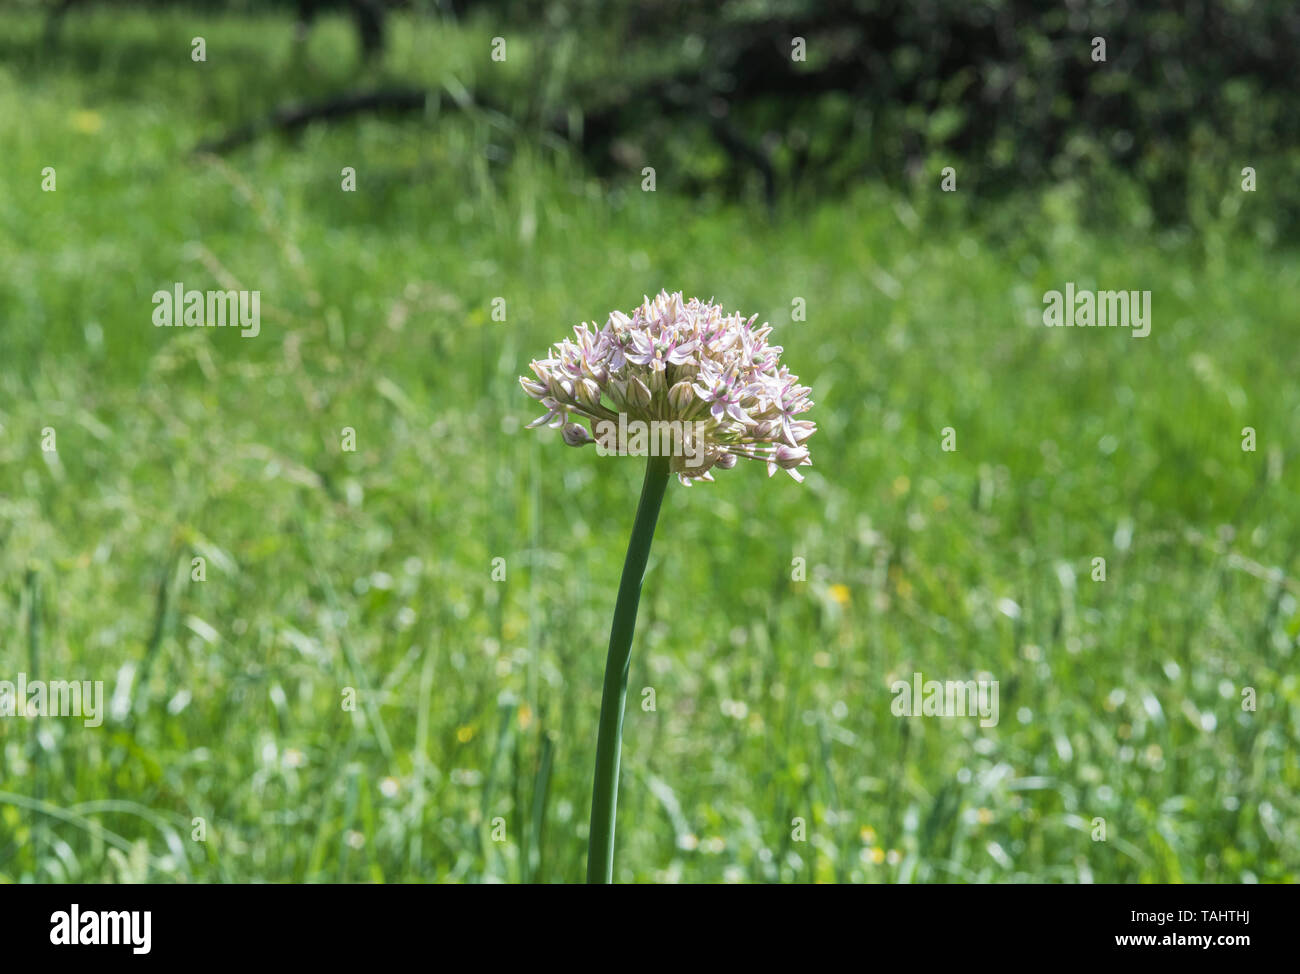 Flower head of Allium nigrum Stock Photo